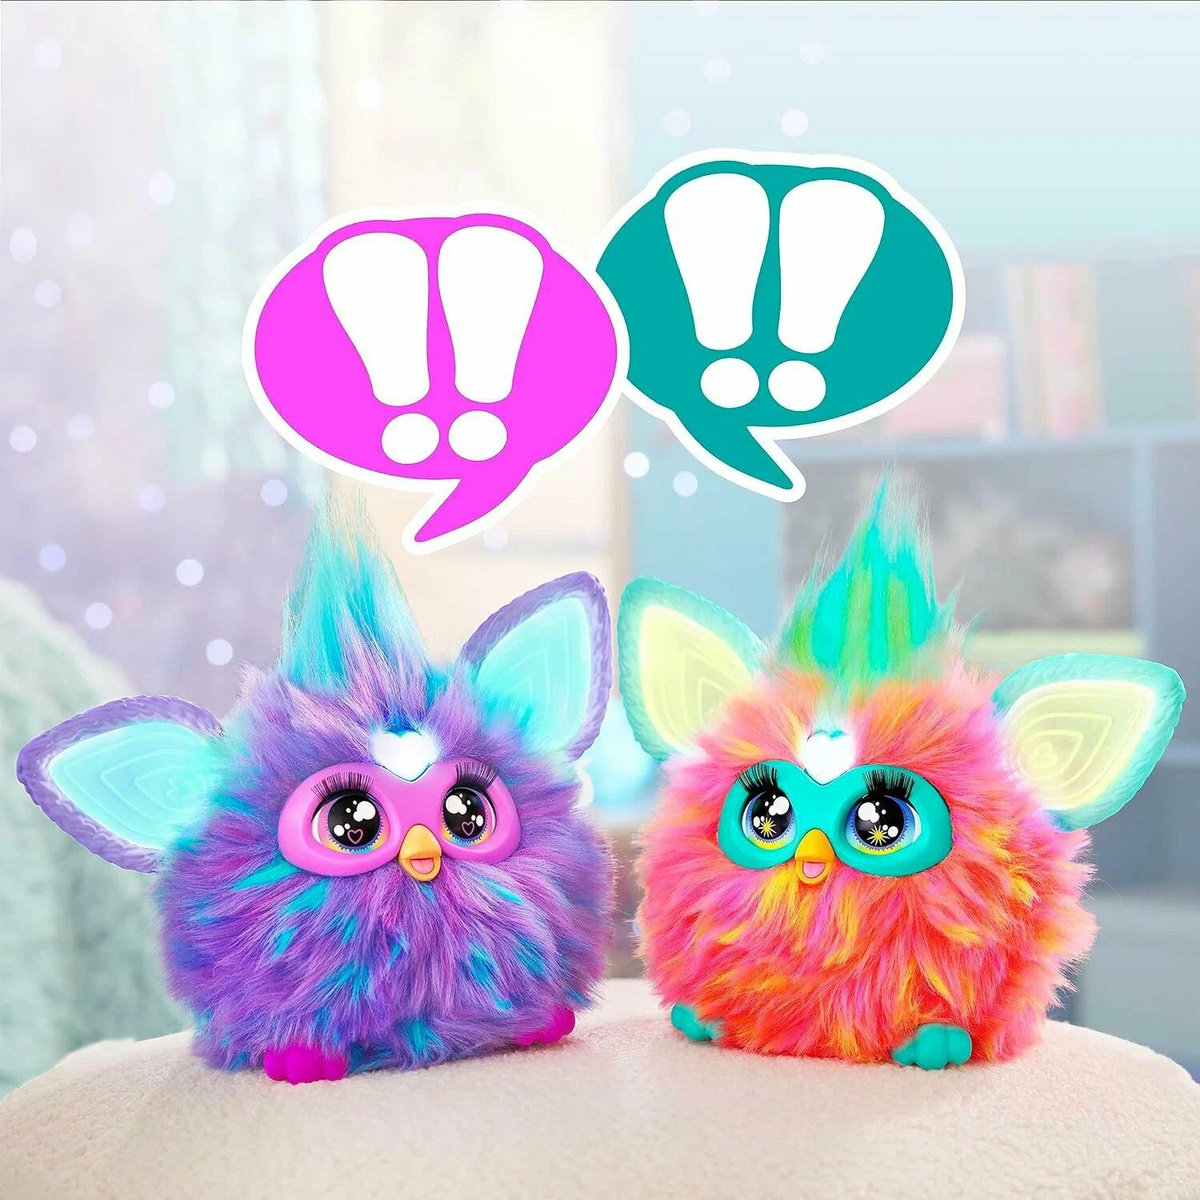 Два друга Furby! Когда два друга Furby вместе, они могут взаимодействовать (Каждый Furby продается отдельно).